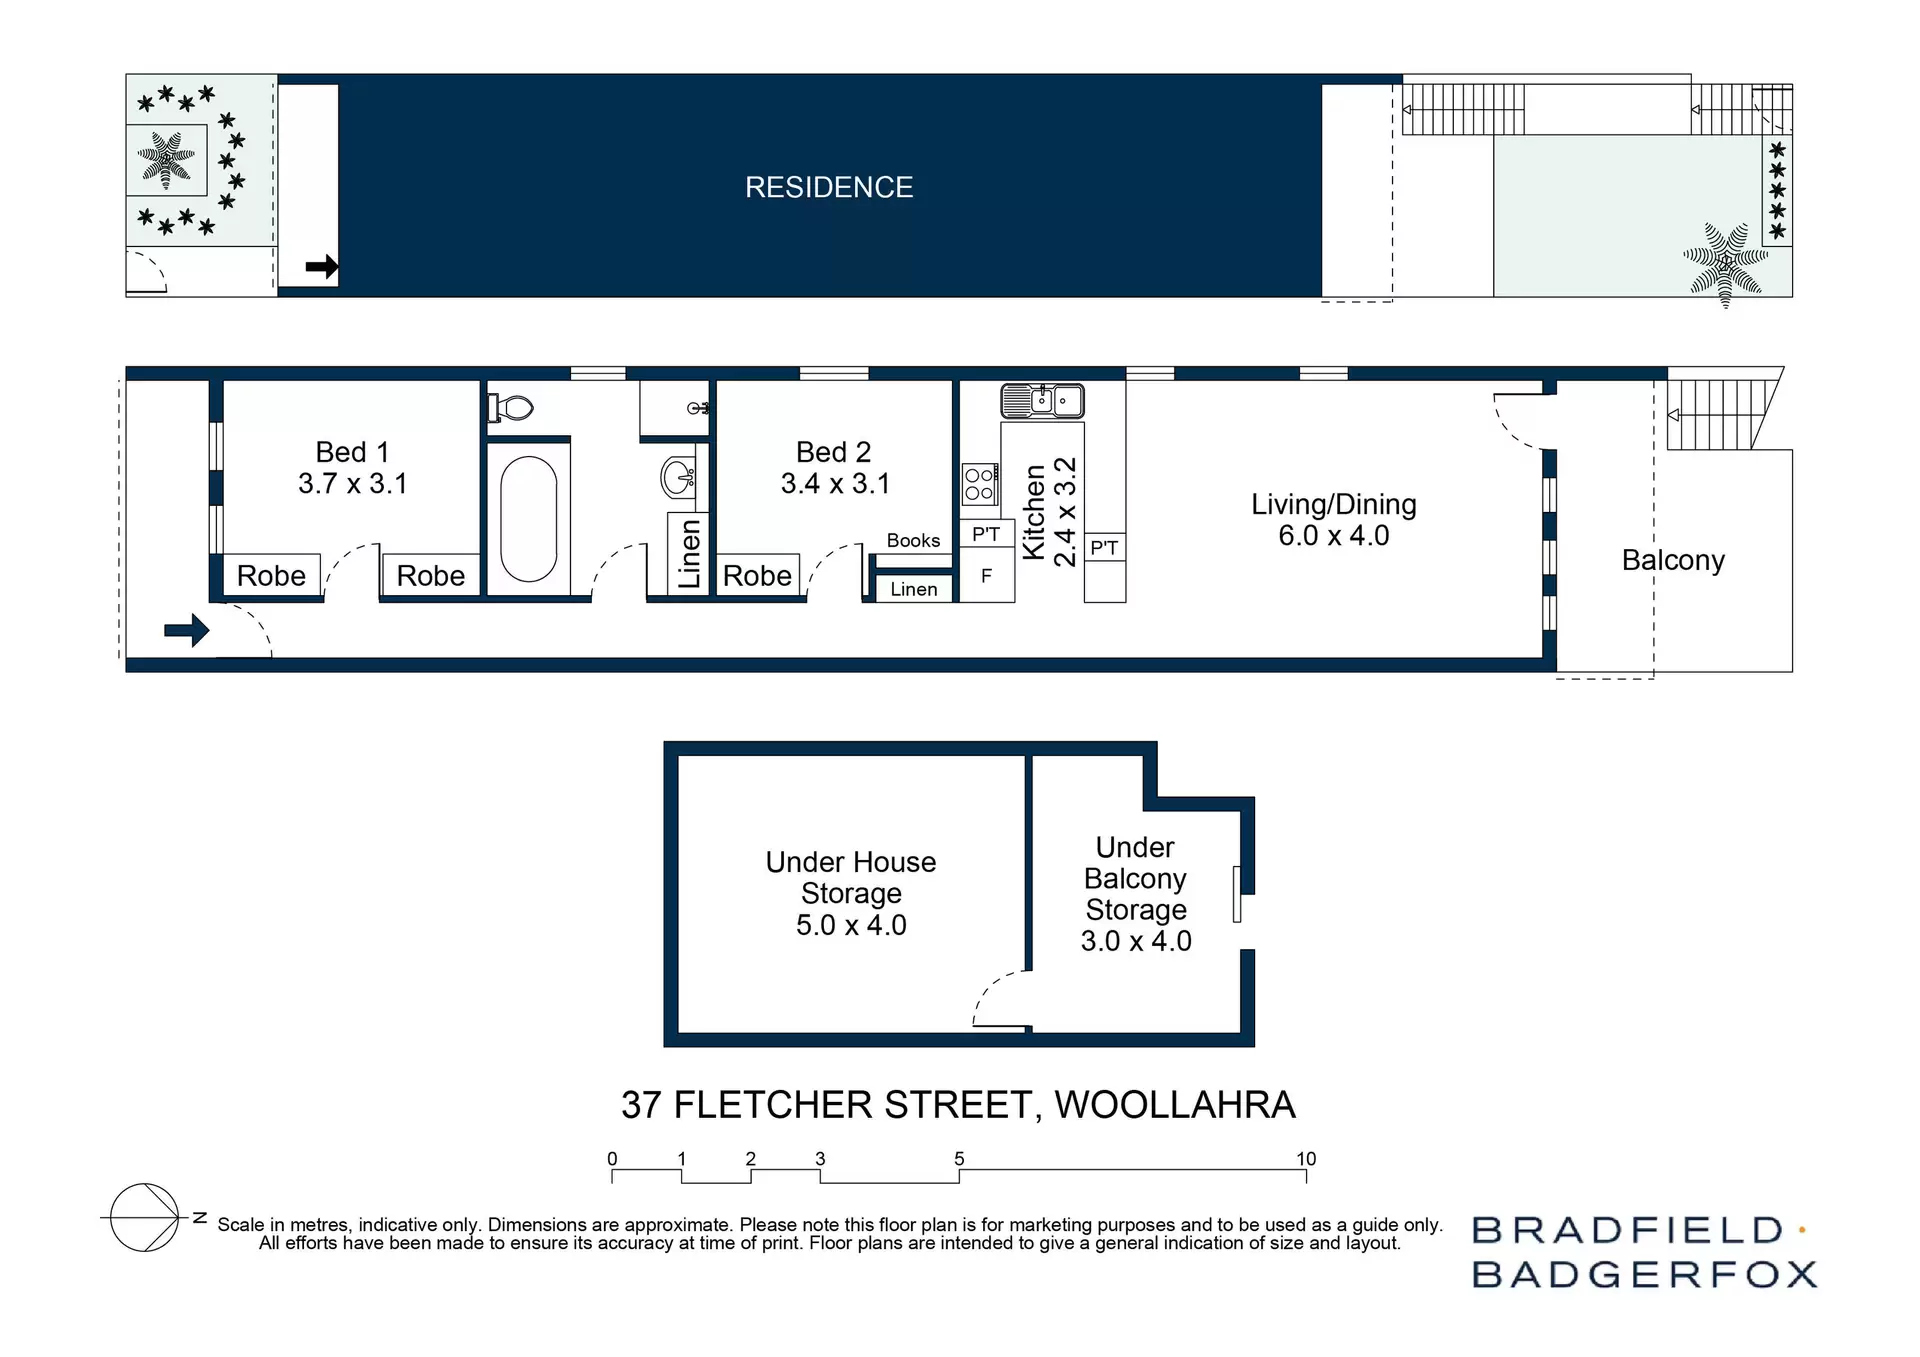 37 Fletcher Street, Woollahra Sold by Bradfield Badgerfox - image 1